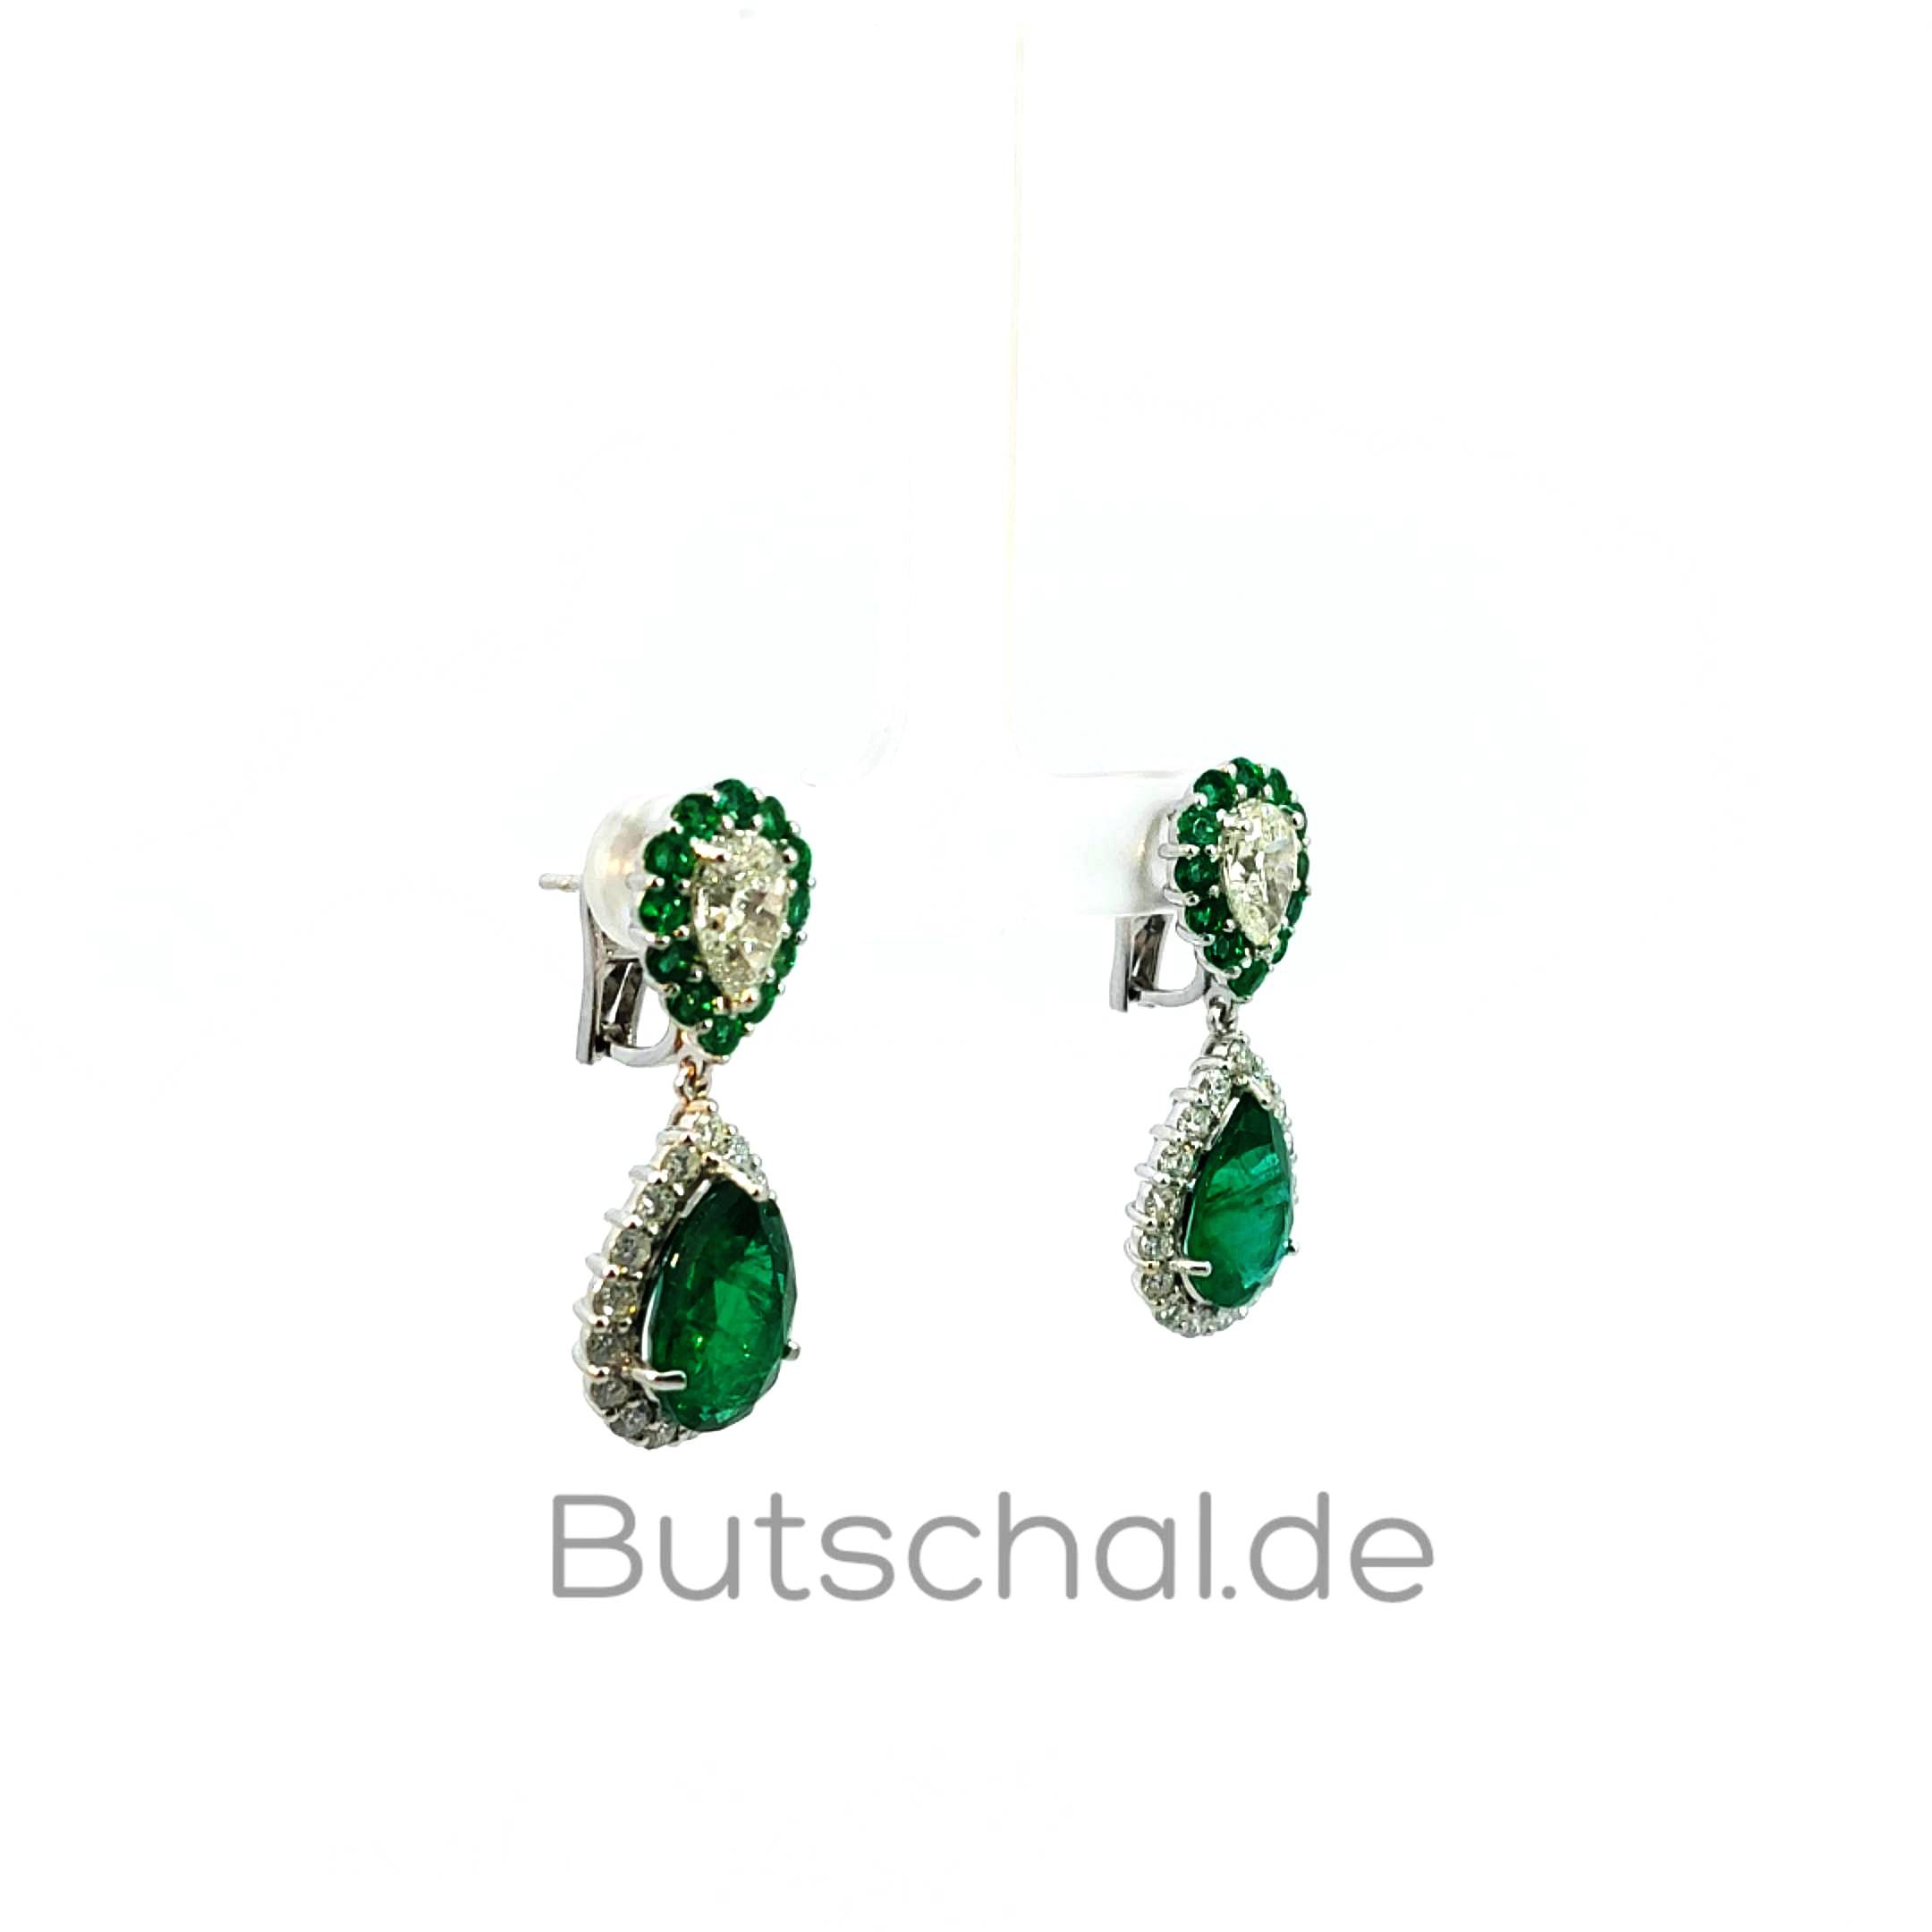  Diamant-Smaragd Ohrringe  mit  großen 3,28ct  Diamanttropfen und 8,14ct Smaragdtropfen aus Zambia.